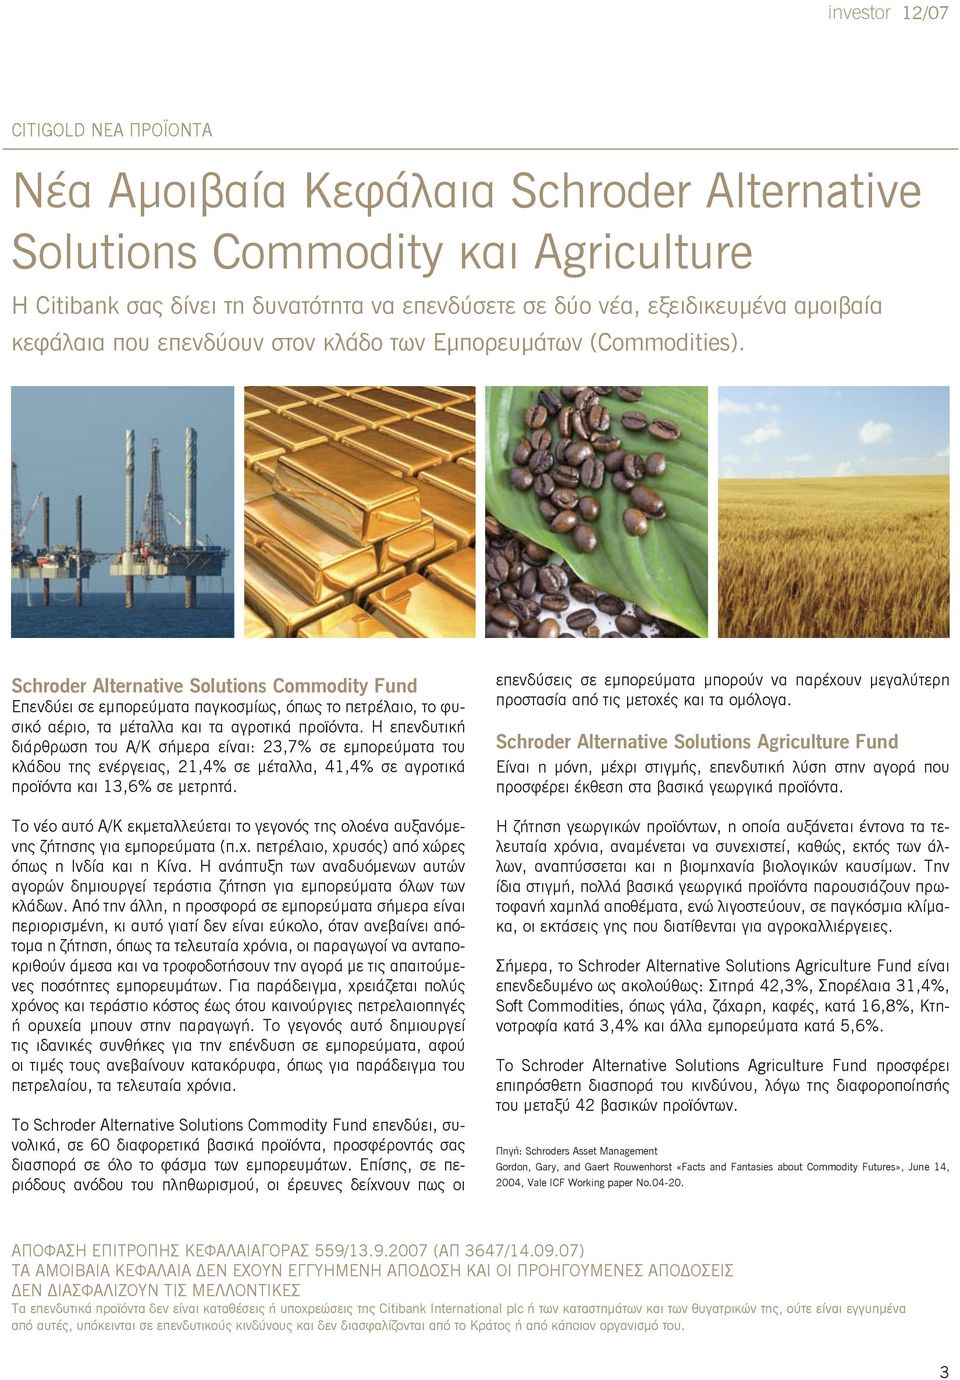 Schroder Alternative Solutions Commodity Fund Eπενδύει σε εμπορεύματα παγκοσμίως, όπως το πετρέλαιο, το φυσικό αέριο, τα μέταλλα και τα αγροτικά προϊόντα.